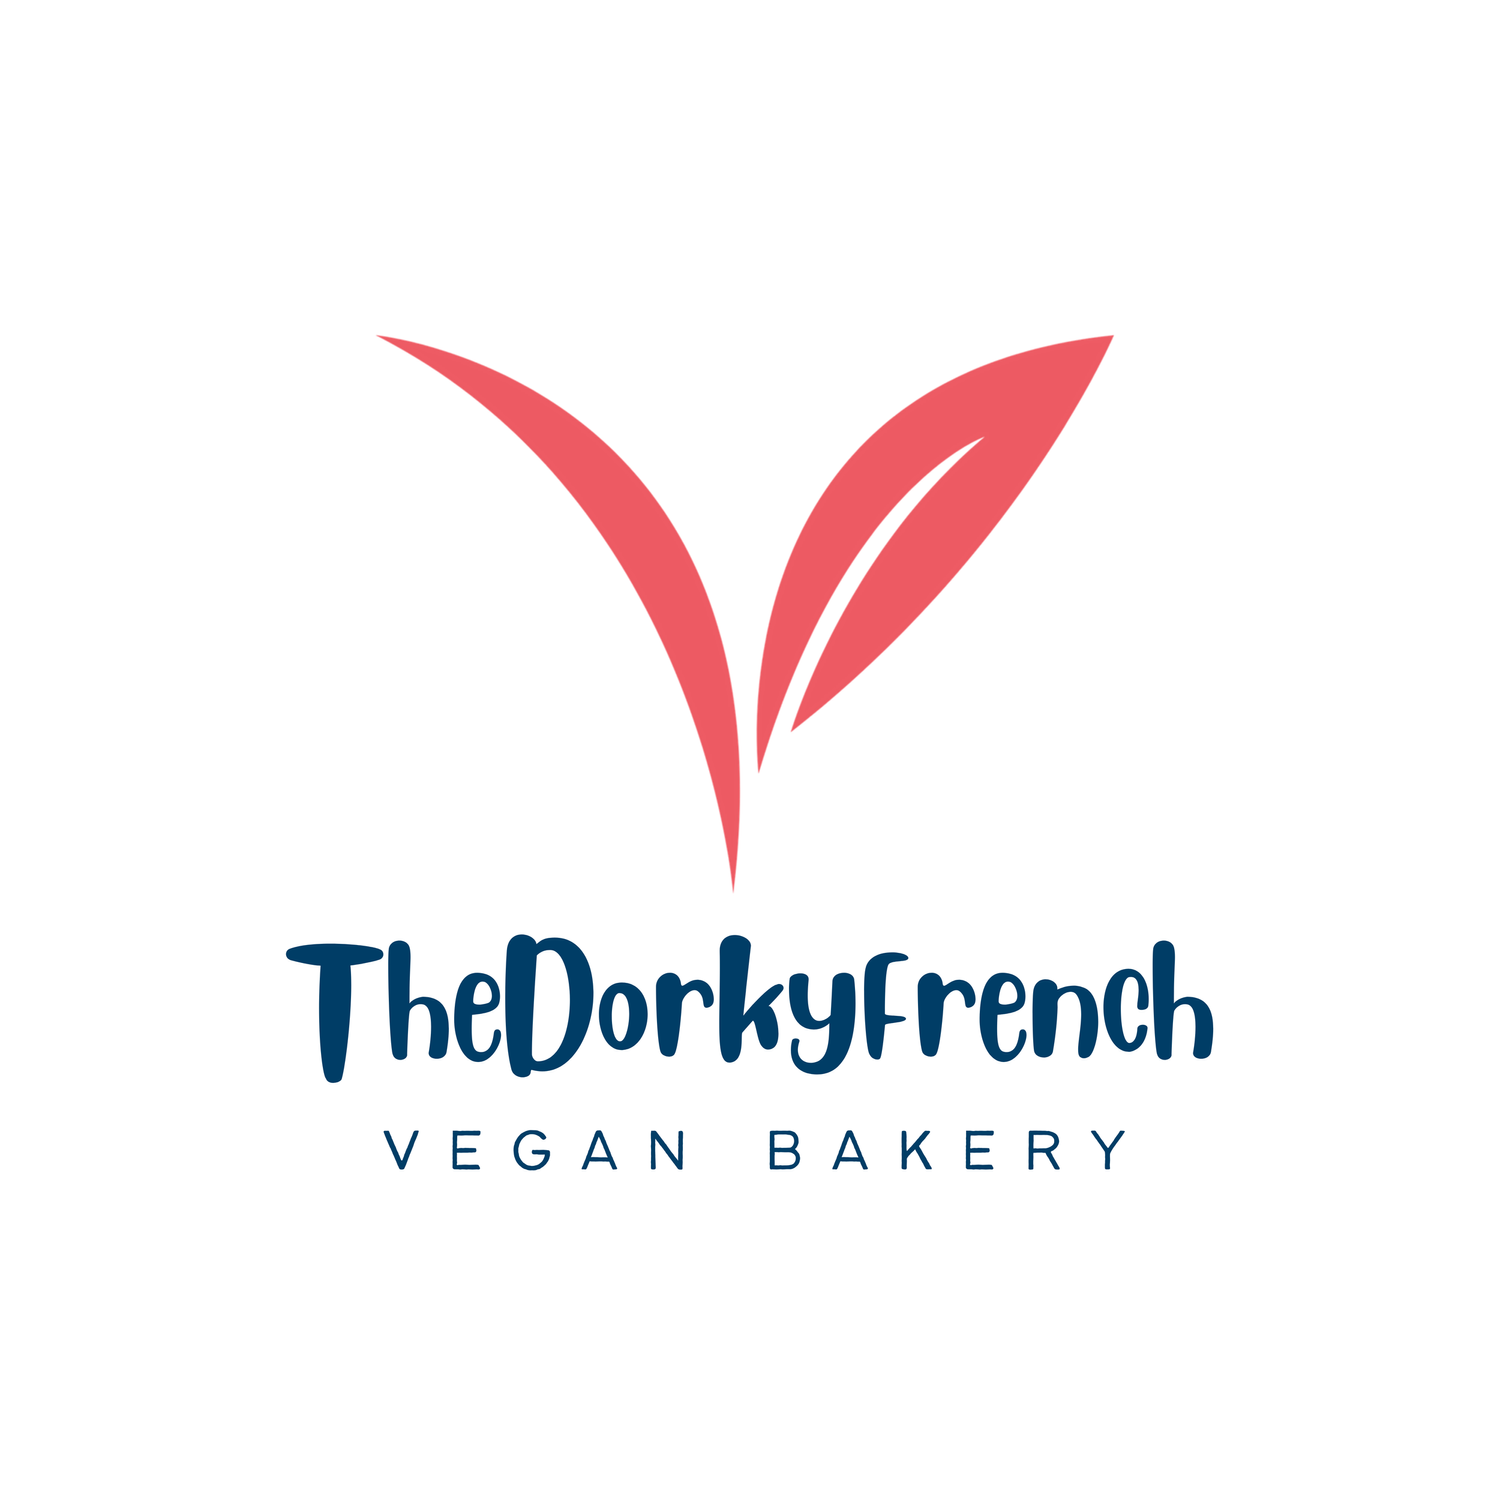 TheDorkyFrench vegan bakery